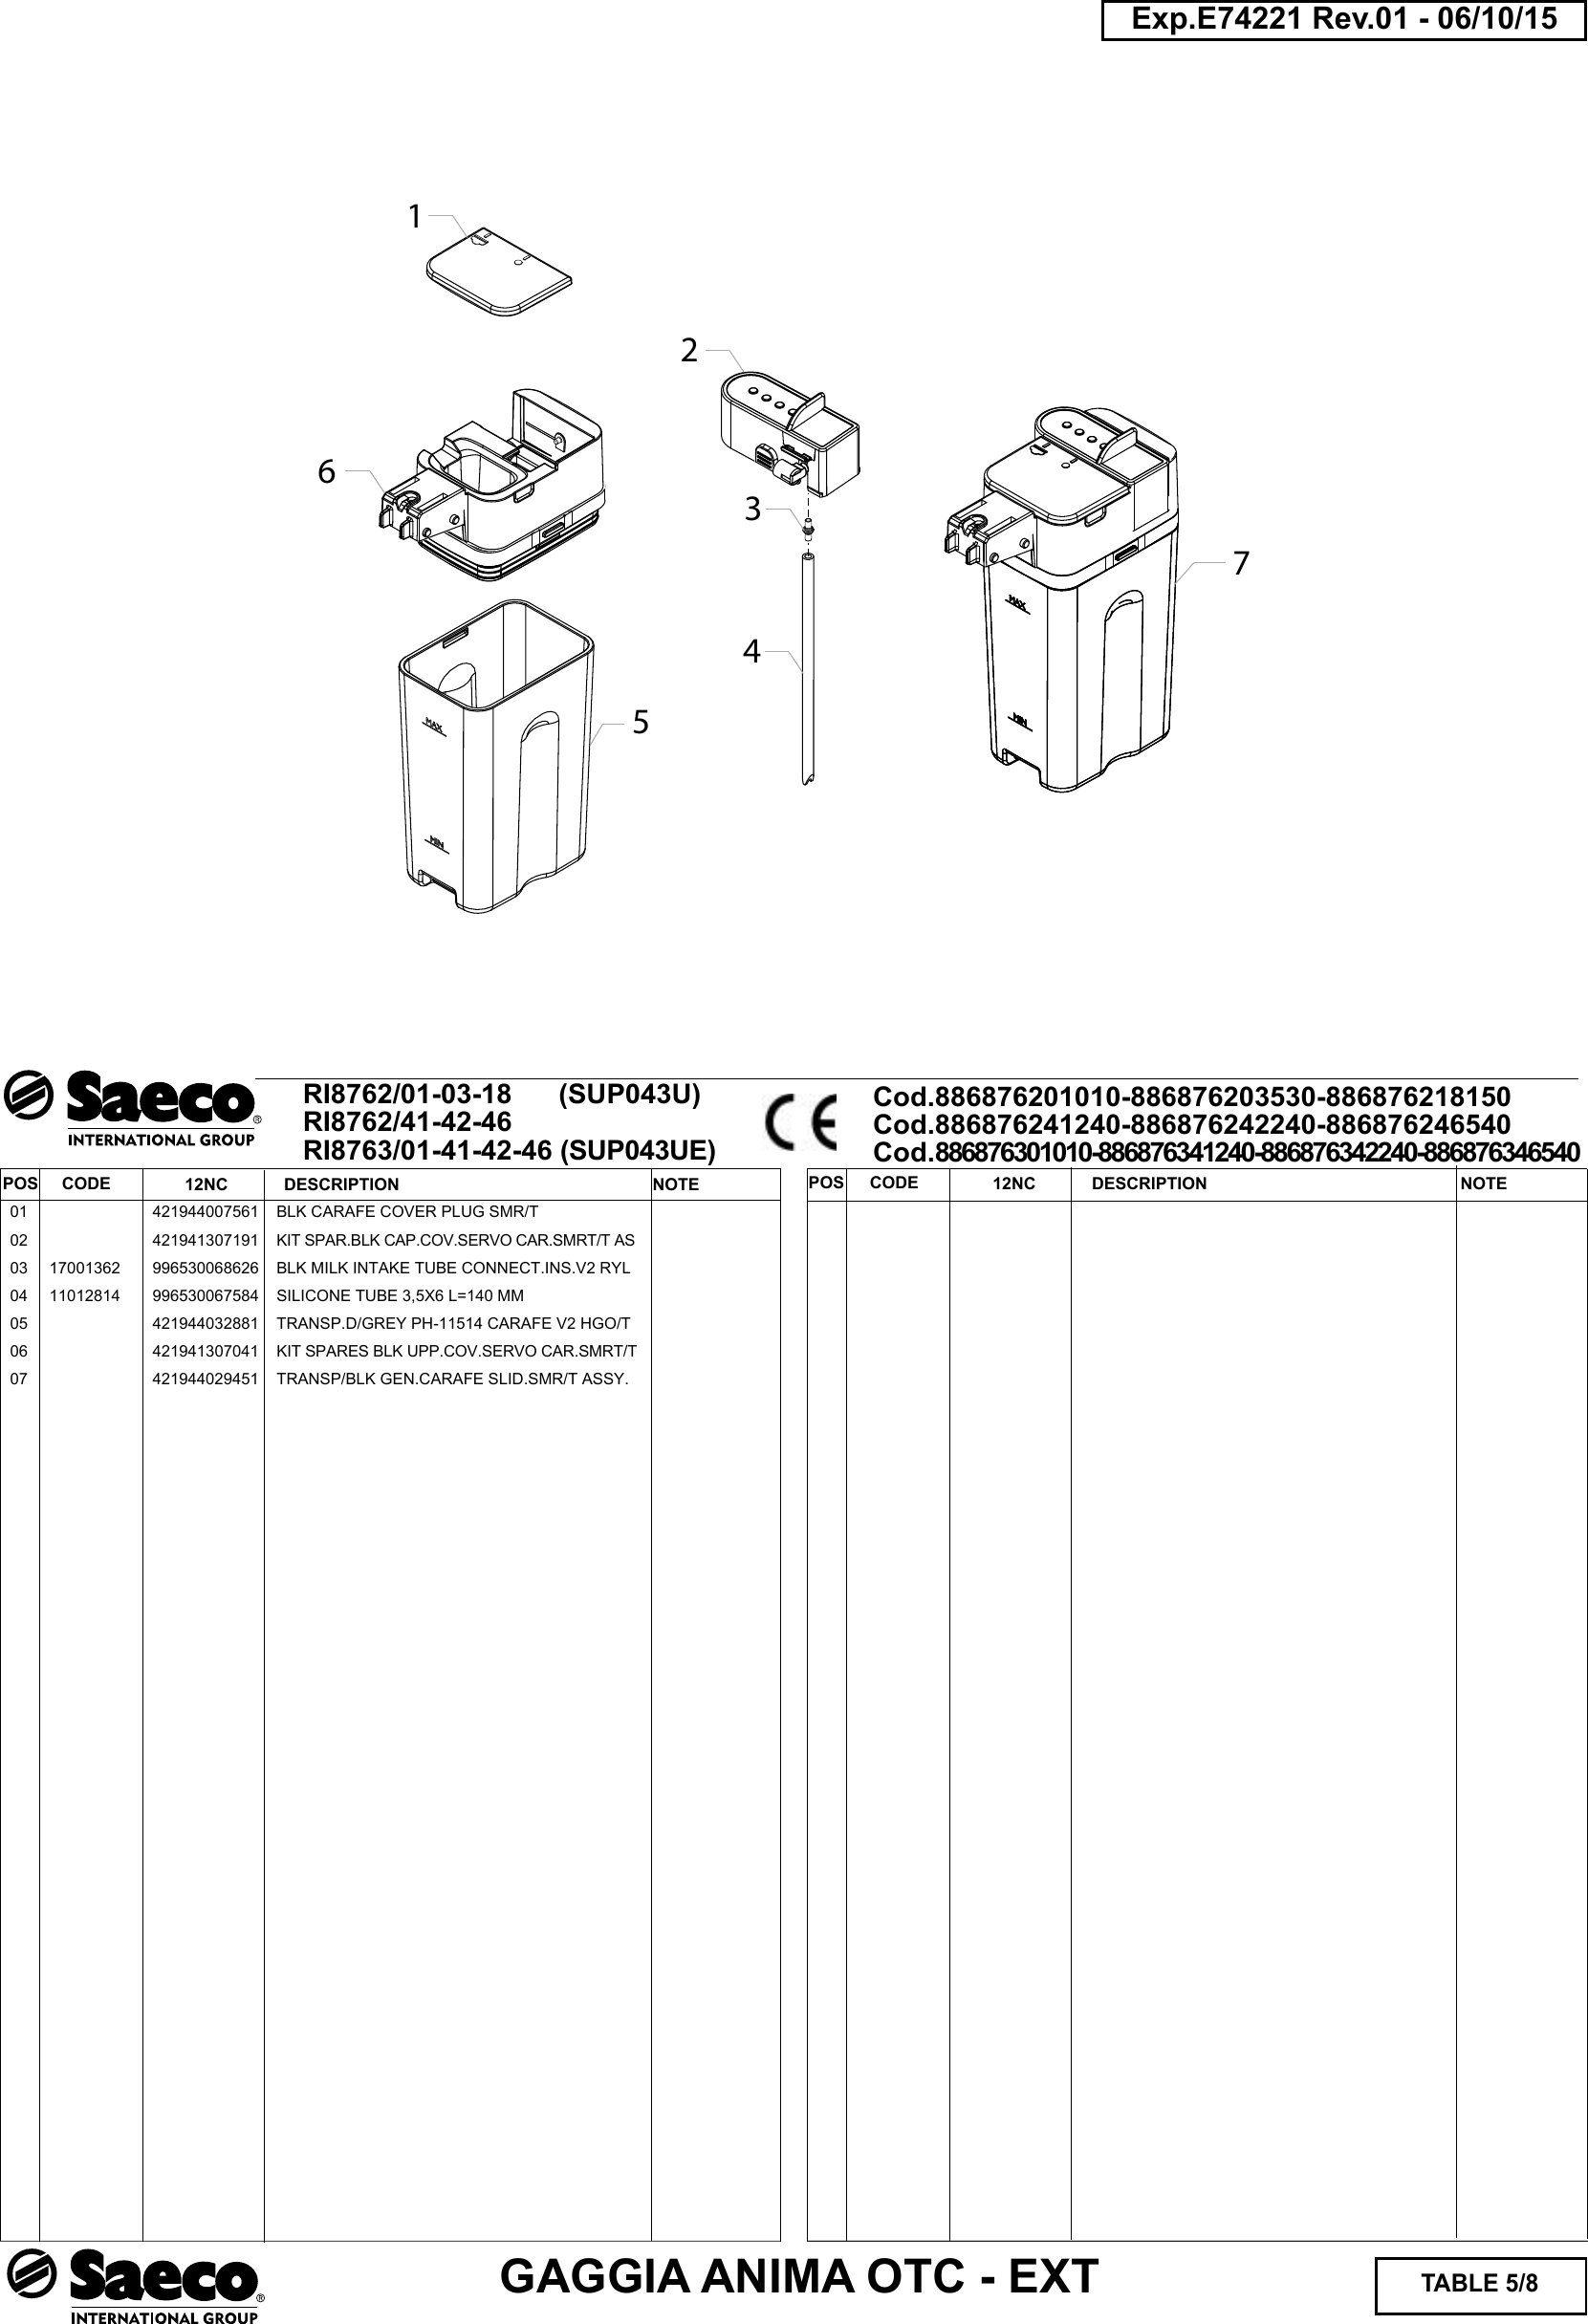 Page 5 of 8 - Gaggia Anima Prestige Parts Diagram User Manual